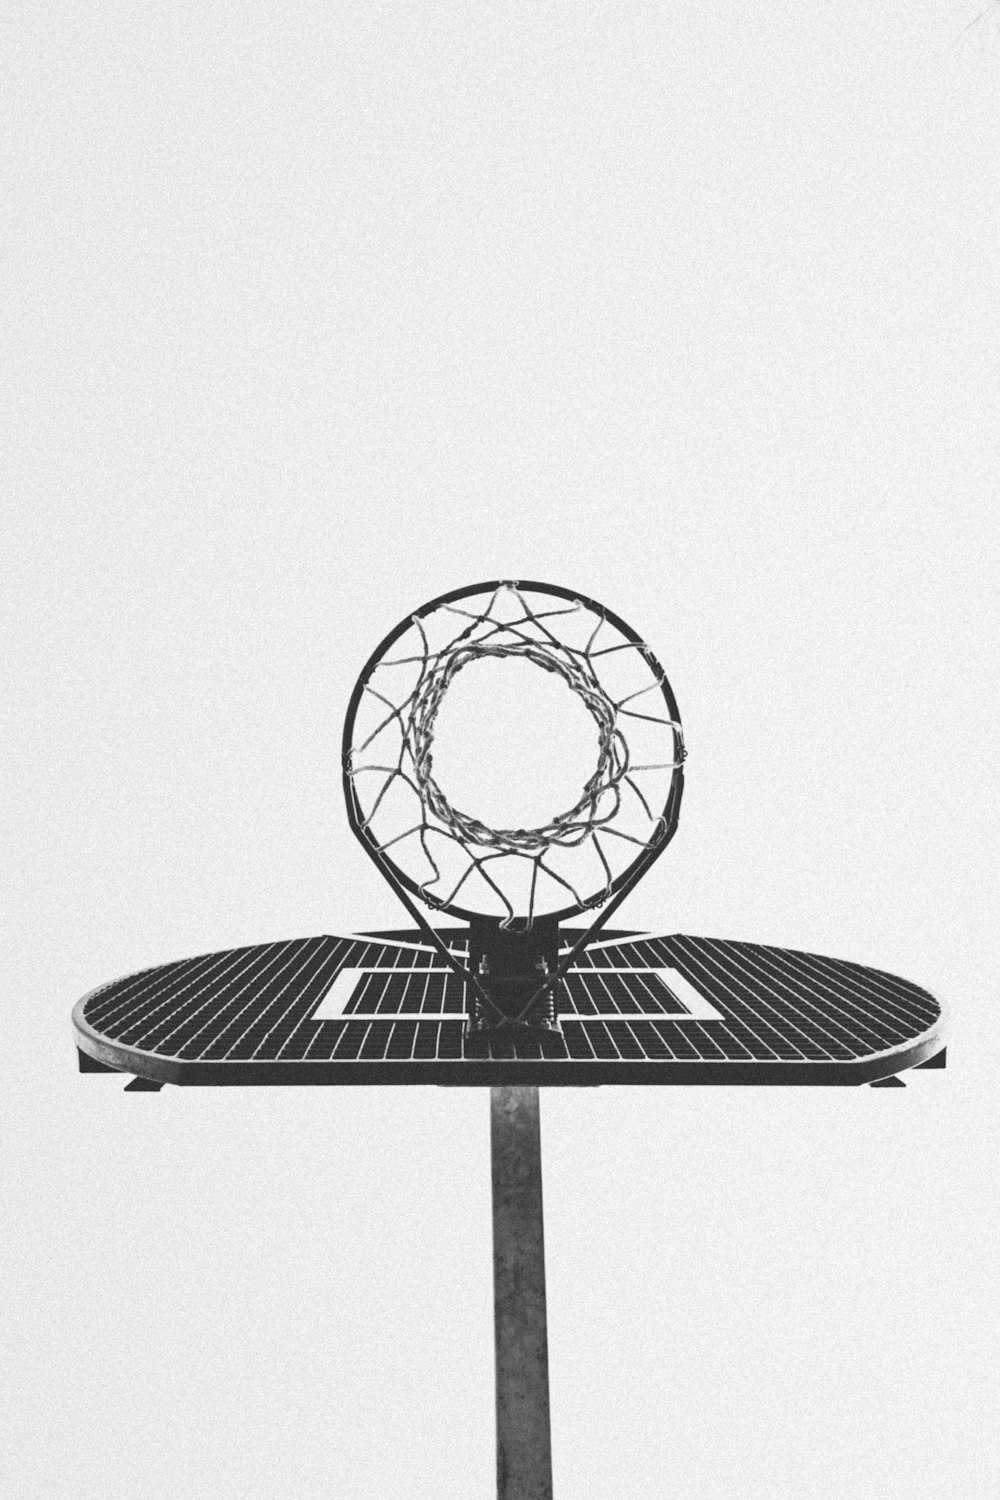 Una foto en blanco y negro de un aro de baloncesto